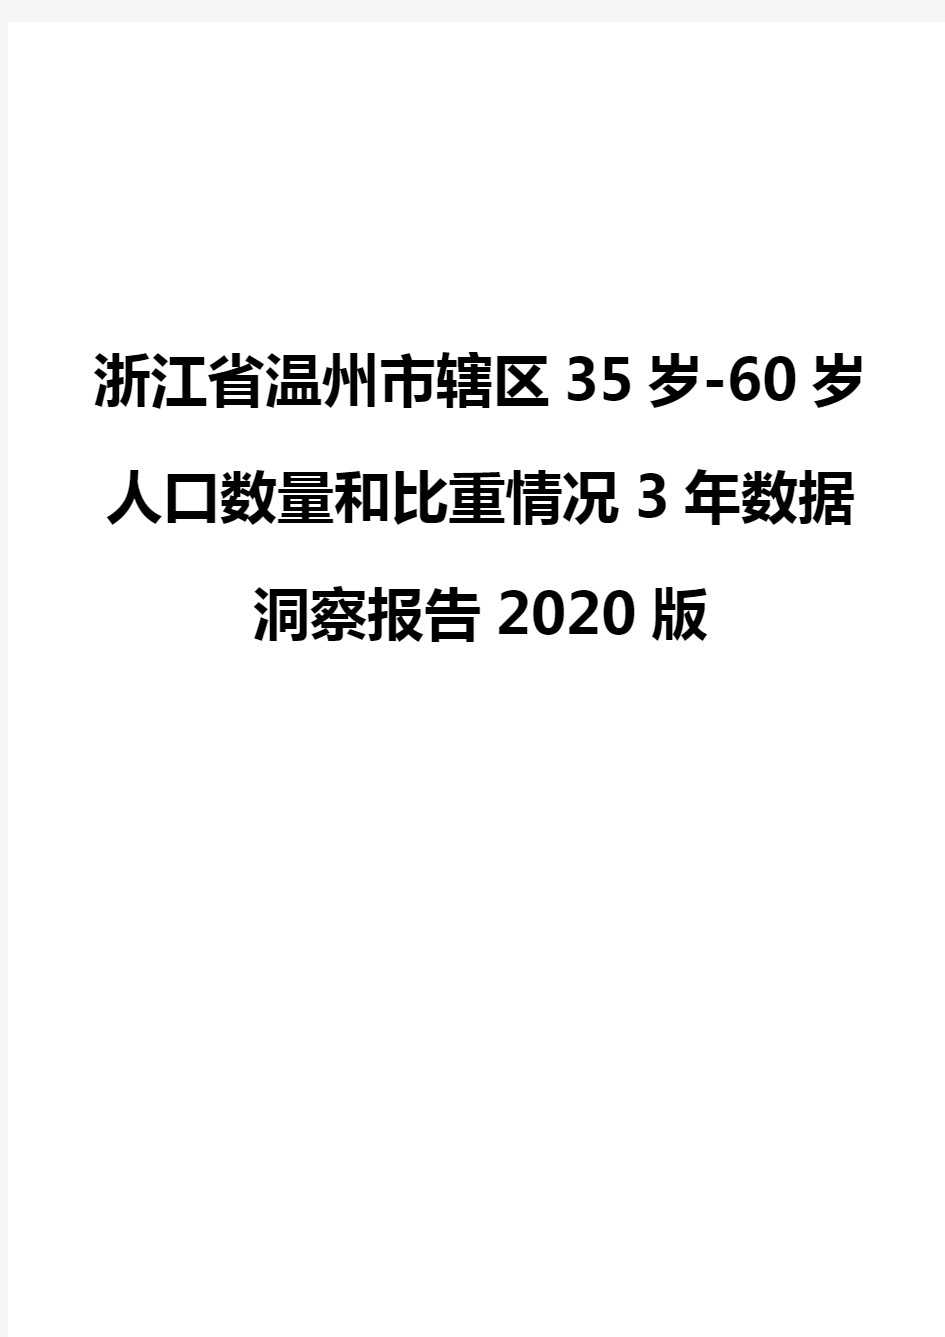 浙江省温州市辖区35岁-60岁人口数量和比重情况3年数据洞察报告2020版